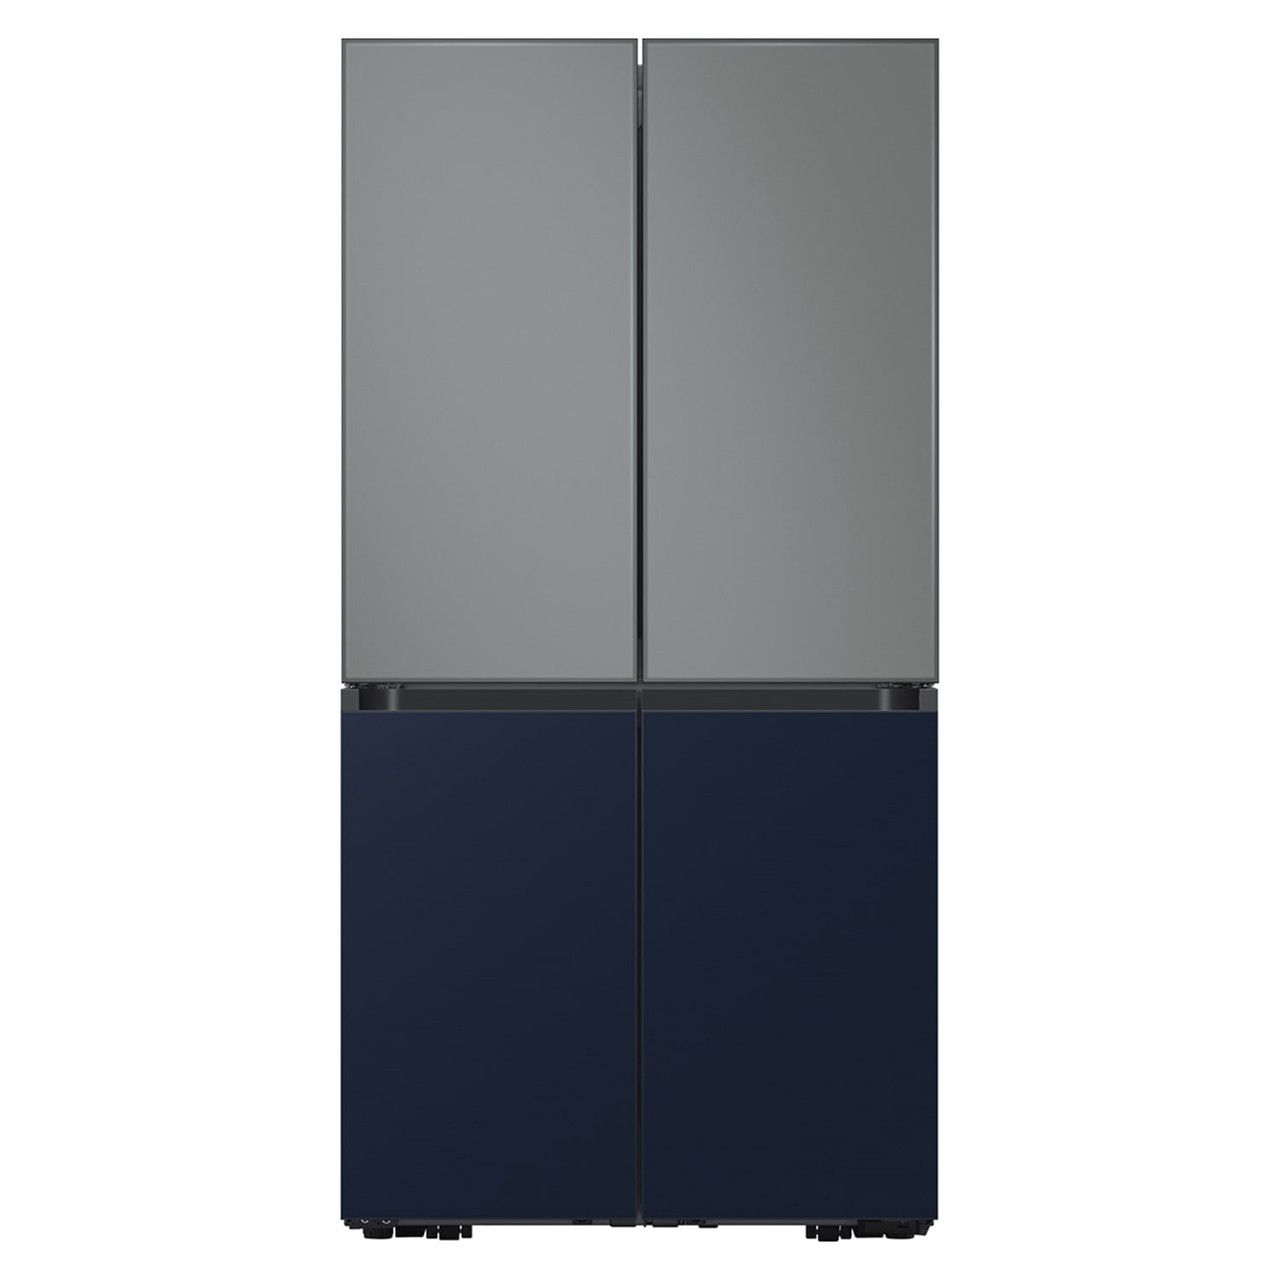 Samsung BESPOKE 4-Door Flex™ Refrigerator Panel in Navy Steel - Bottom Panel